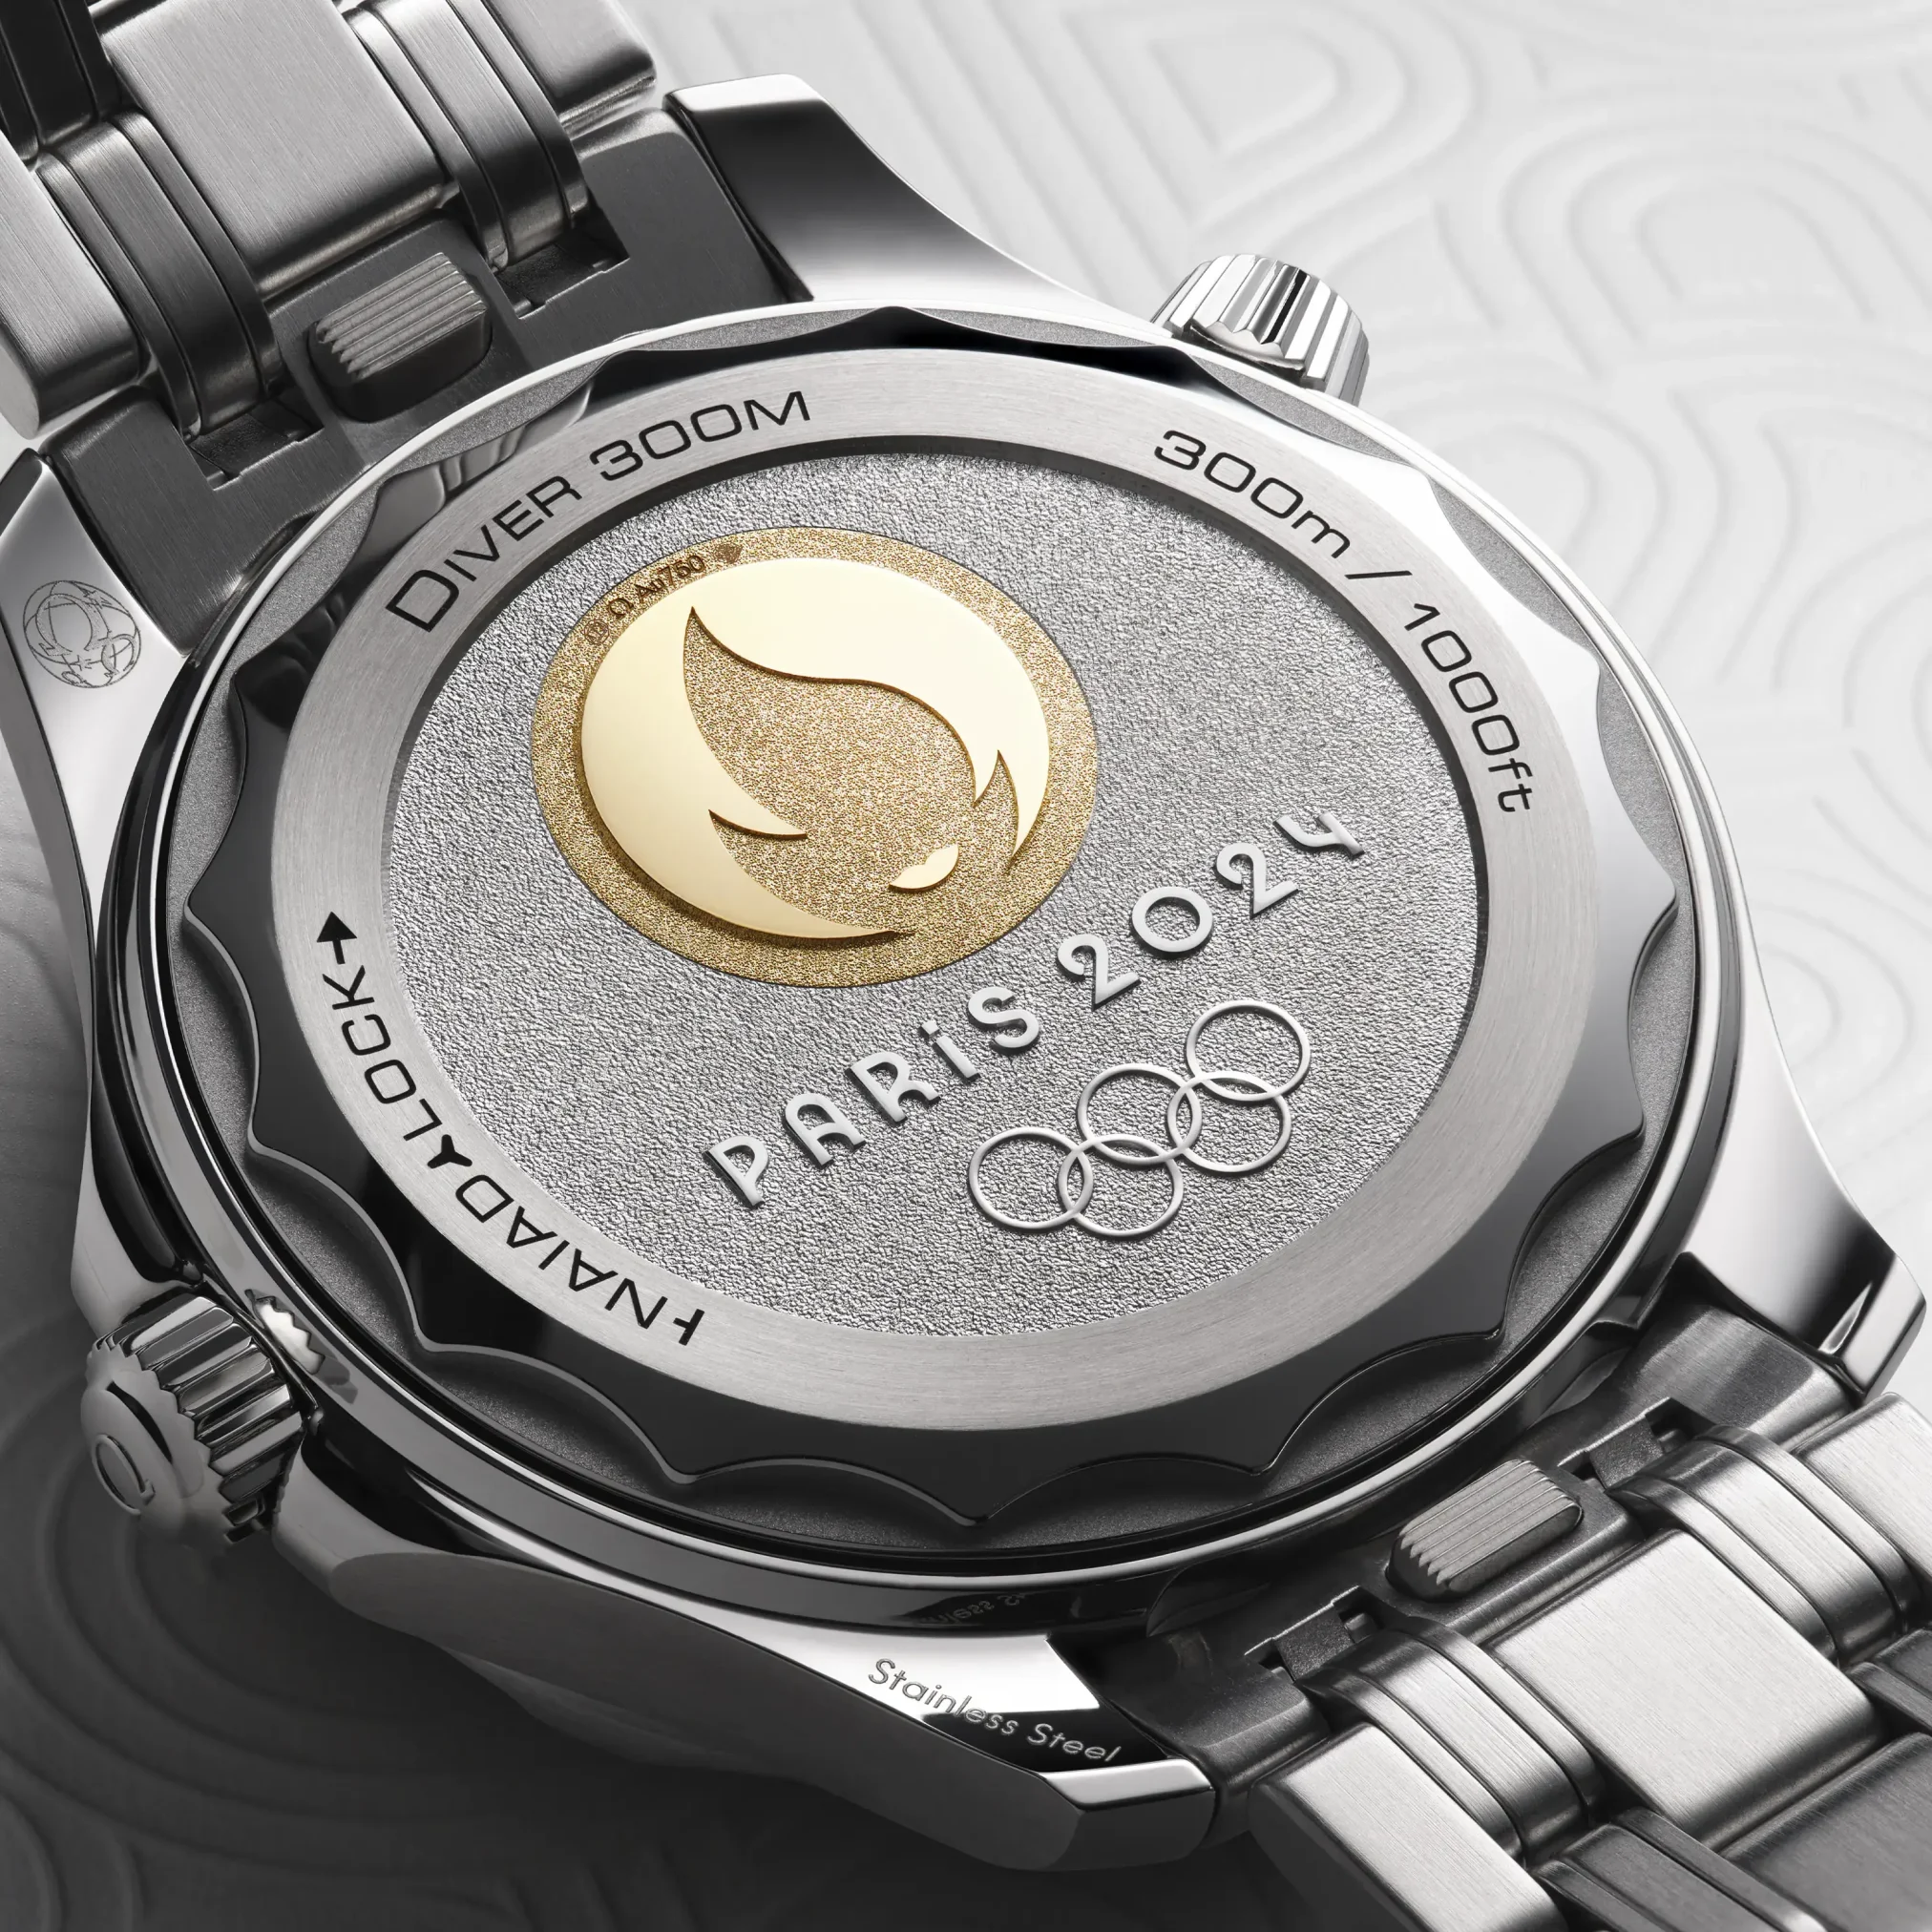 Đồng hồ Omega Seamaster Diver 300M Paris Edition 522.21.42.20.04.001 mặt số màu trắng. Dây đeo bằng thép. Thân vỏ bằng thép.